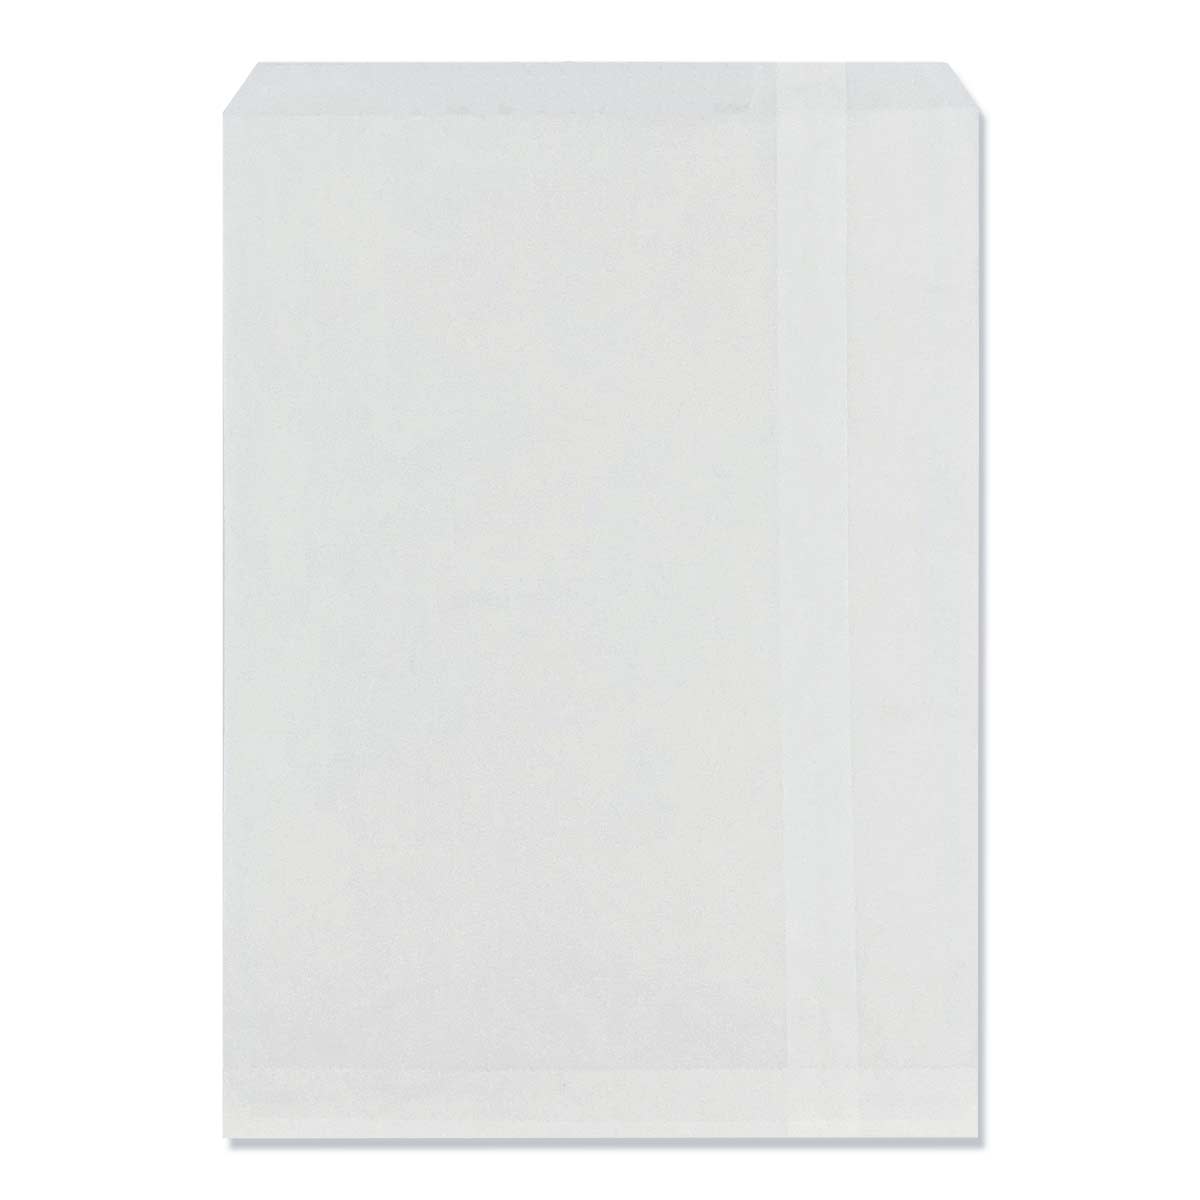 4.96 x 4.96  Black Square Peel & Seal Plain 80lb Envelopes